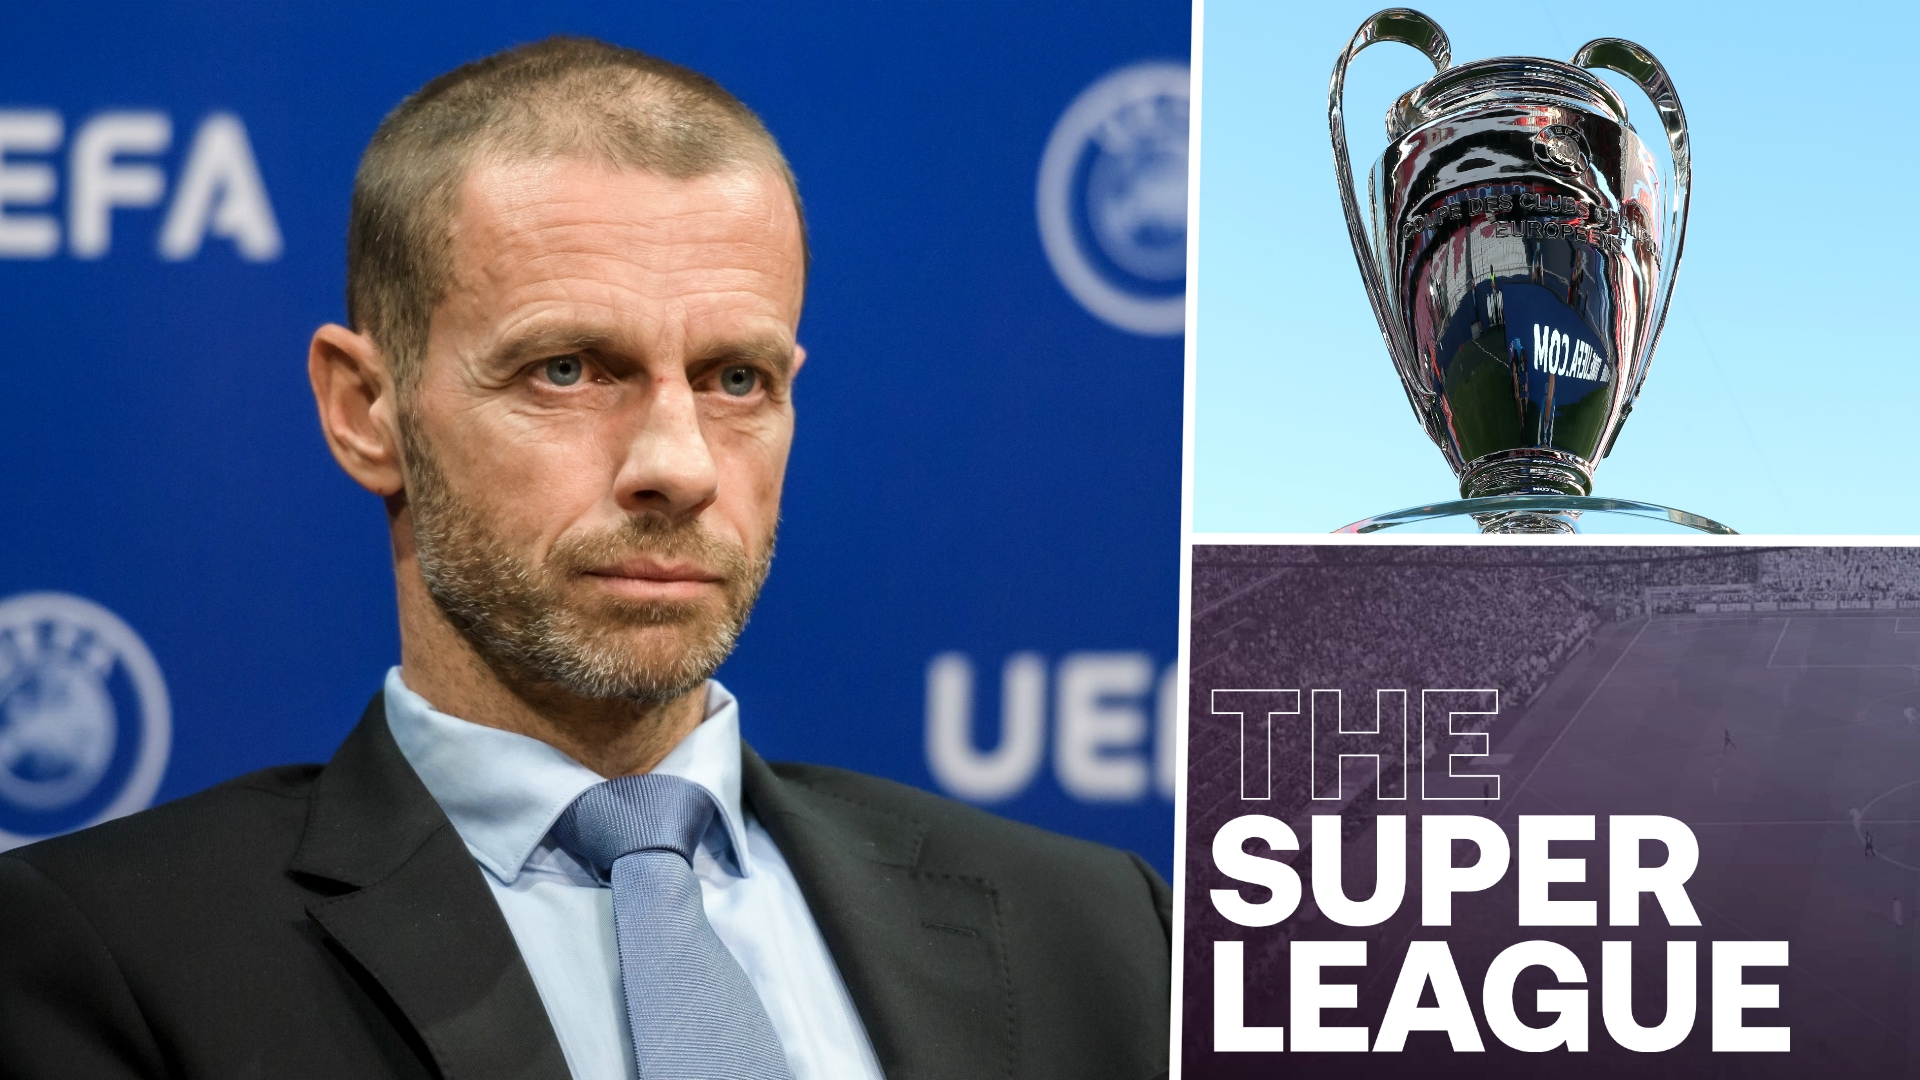 Super Ligue - Le coup de gueule de Ceferin (UEFA) contre le Barça, le Real et la Juventus